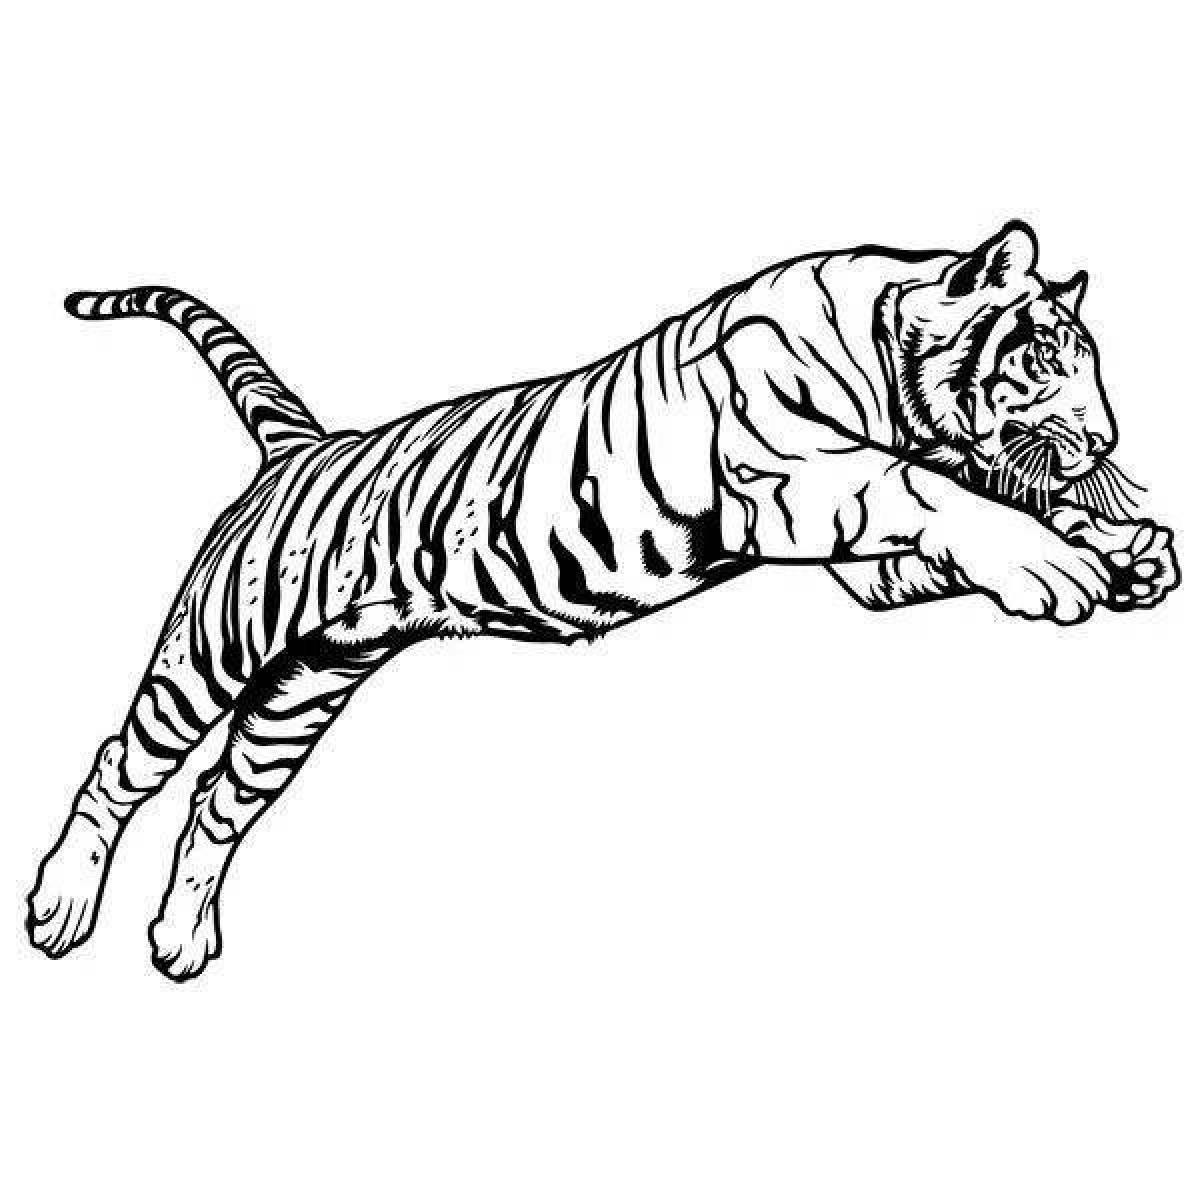 Rampant Bengal tiger coloring page